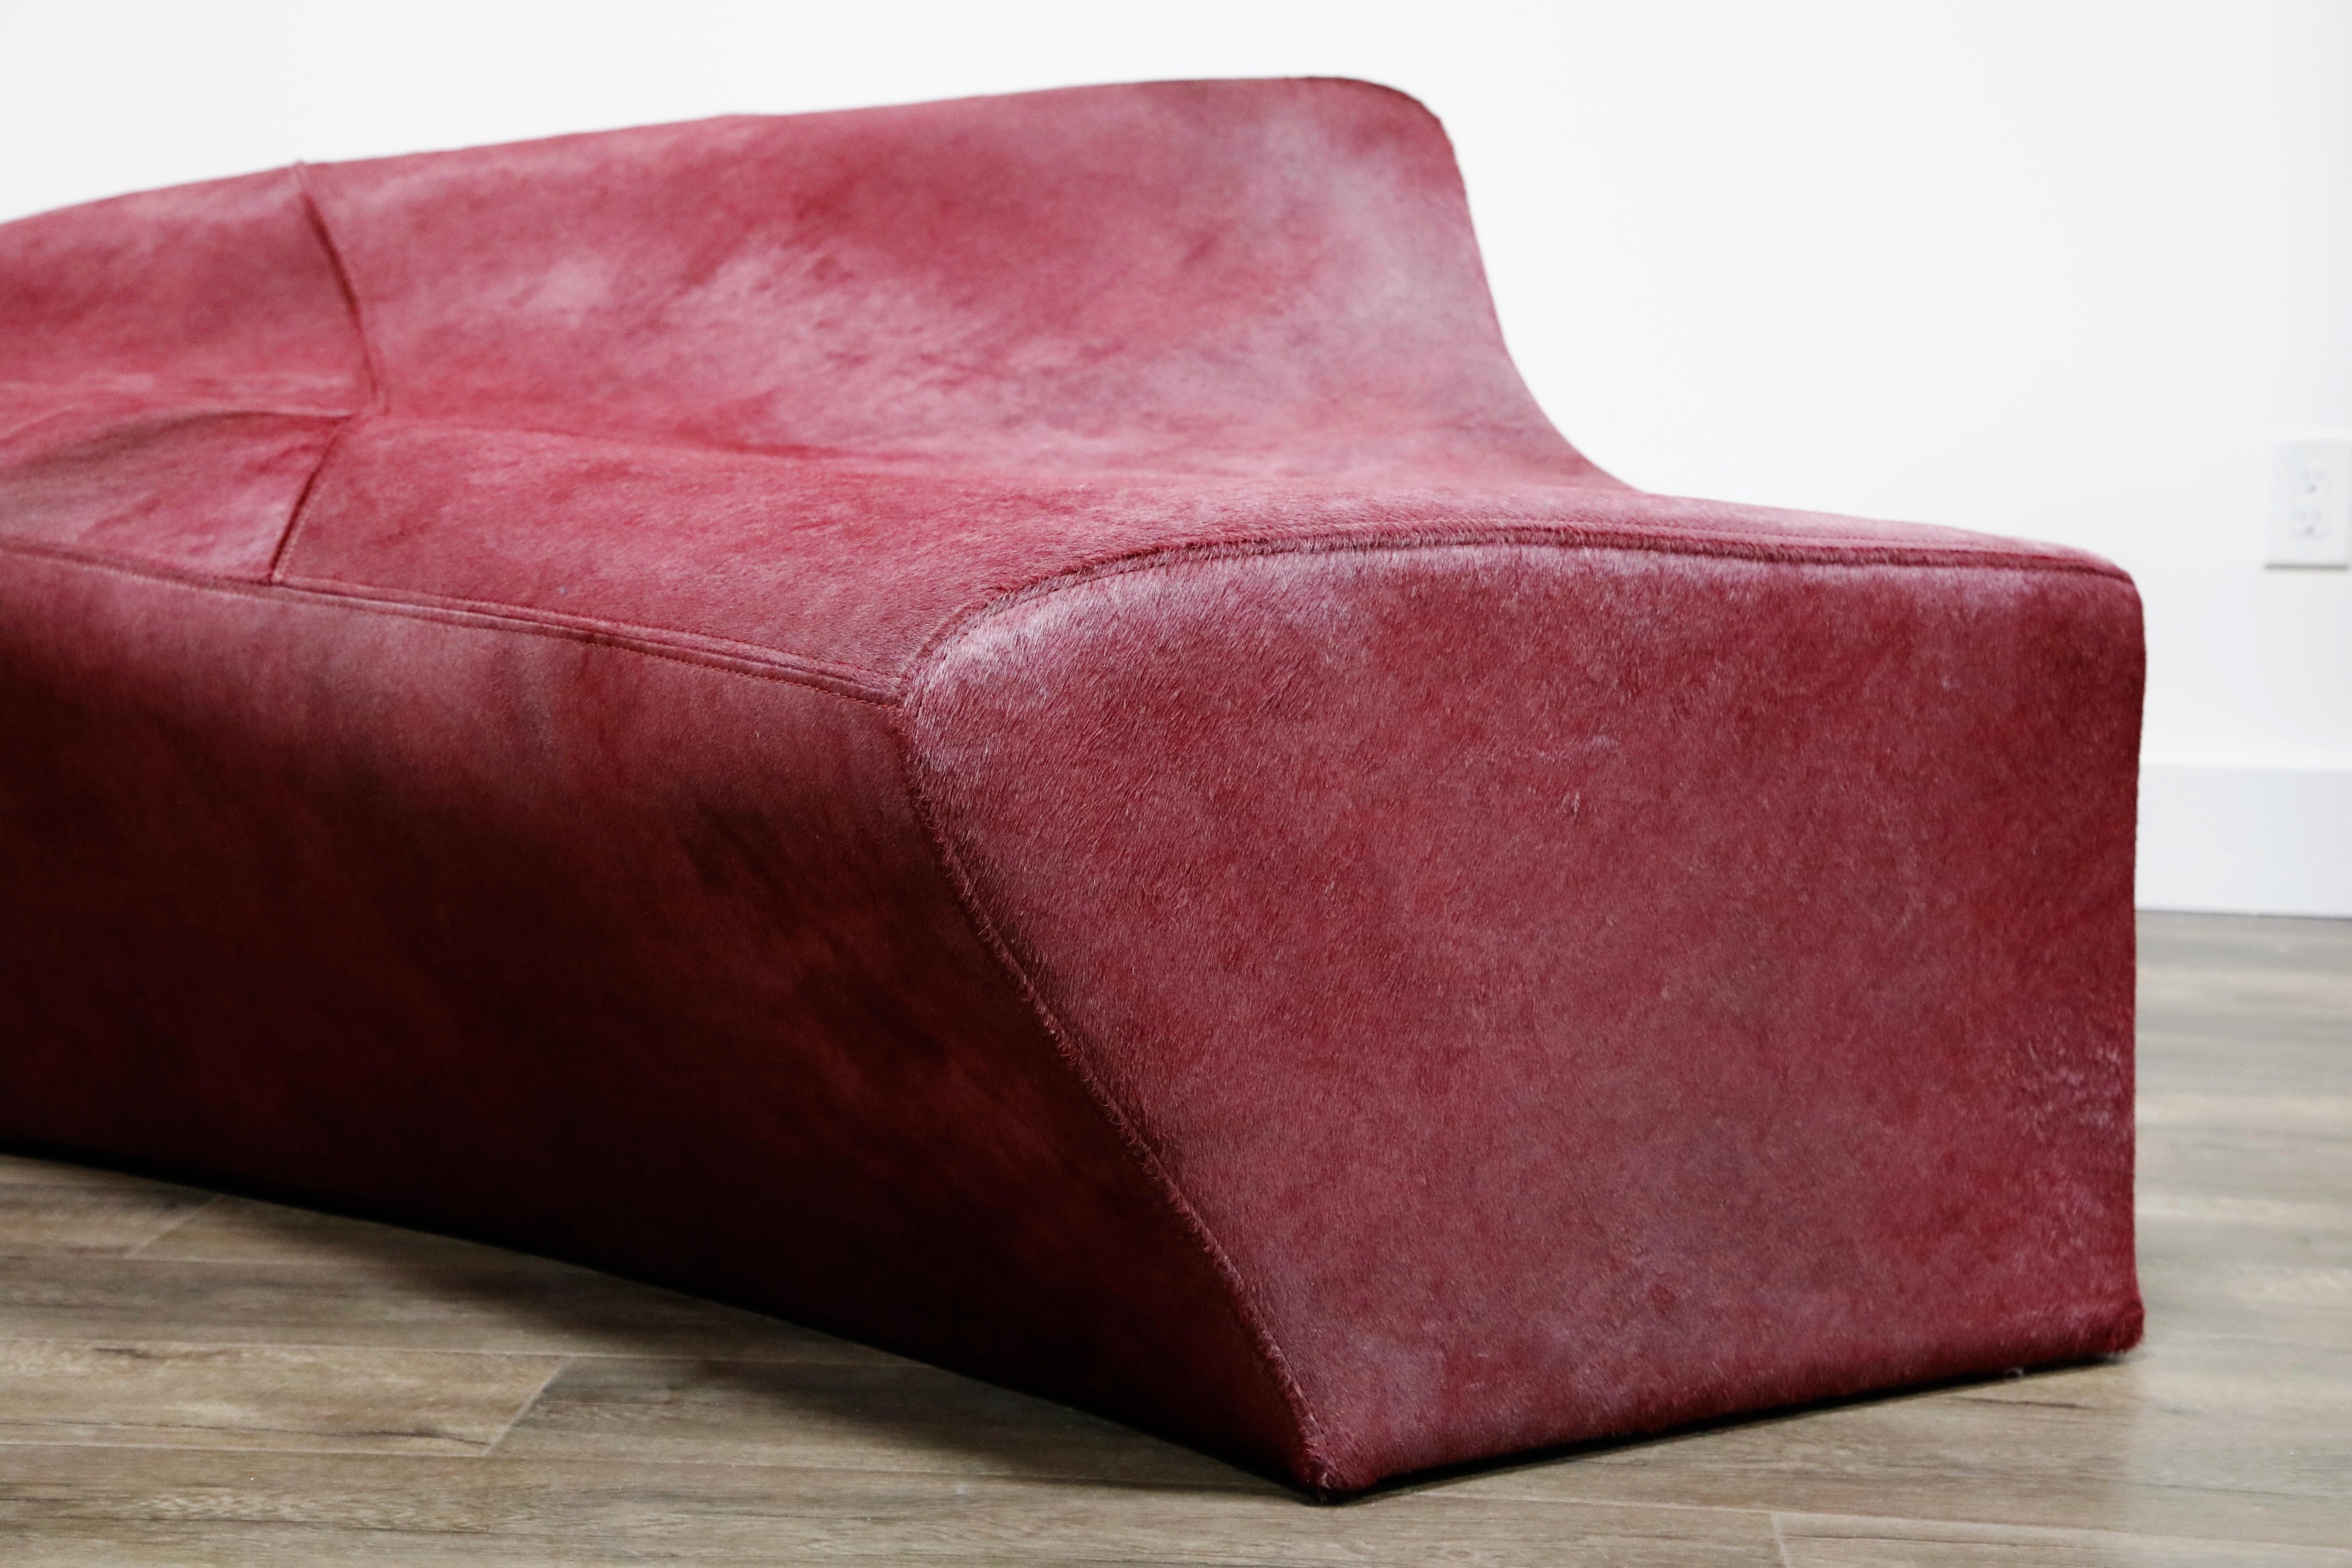 'Moraine' Biomorphic Sofa by Zaha Hadid for Sawaya & Moroni Italy, 2000, Signed 5